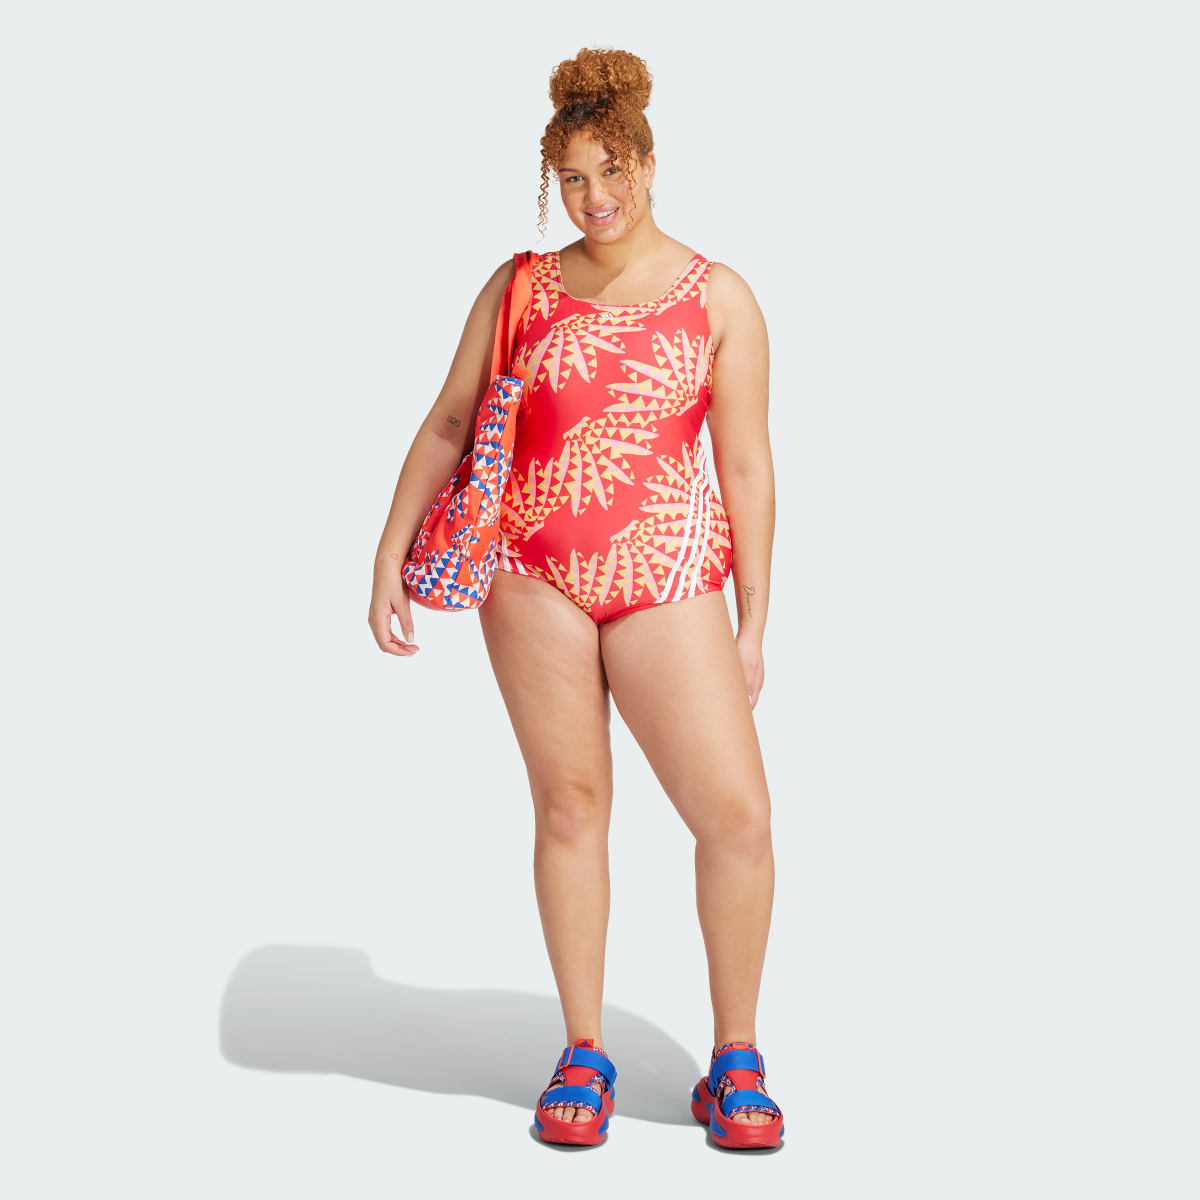 Adidas FARM Rio 3-Stripes CLX Swimsuit (Plus Size). 5